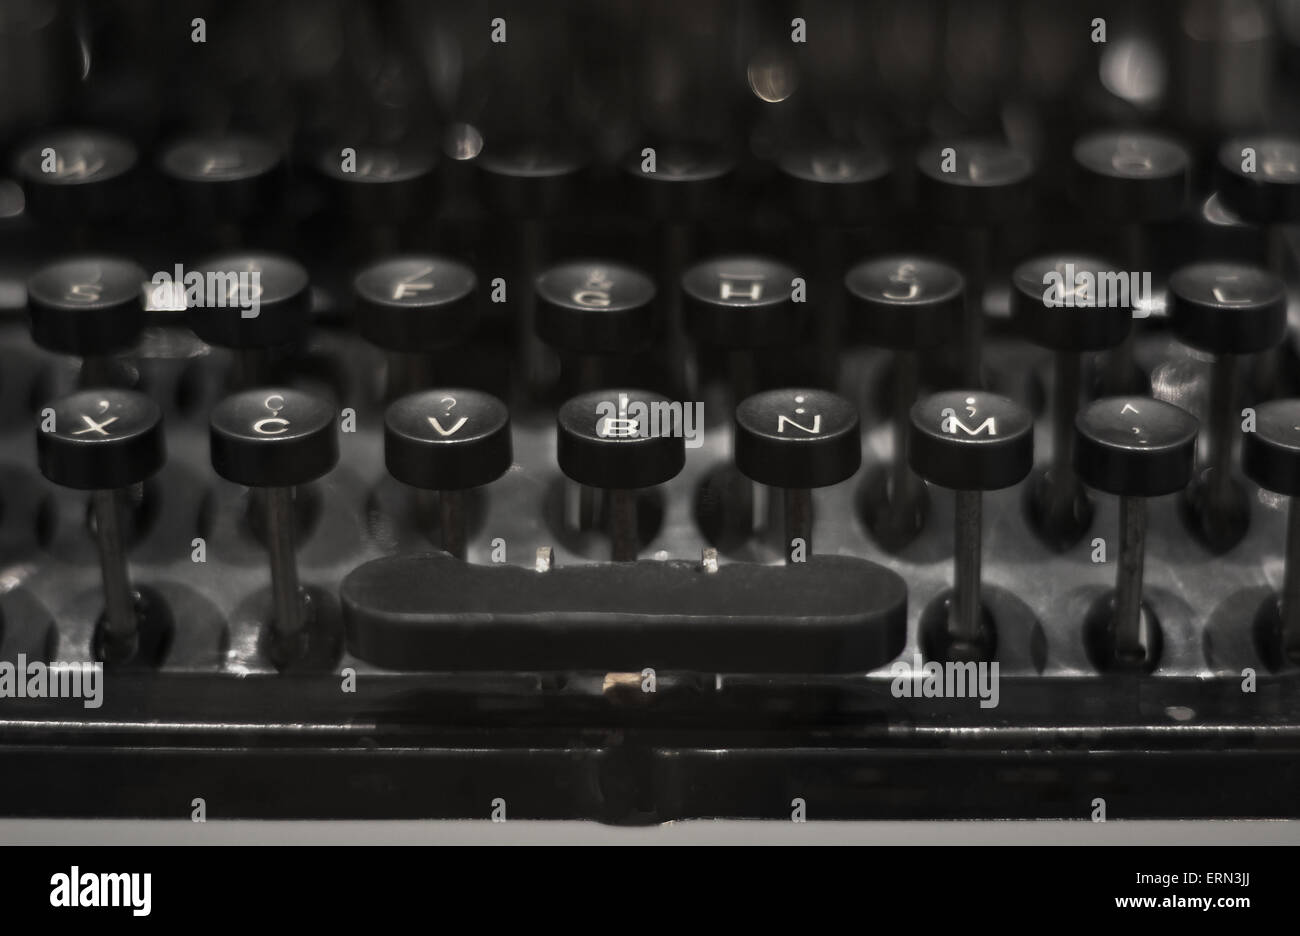 Keyboard of Old Black Vintage Typewriter Stock Photo